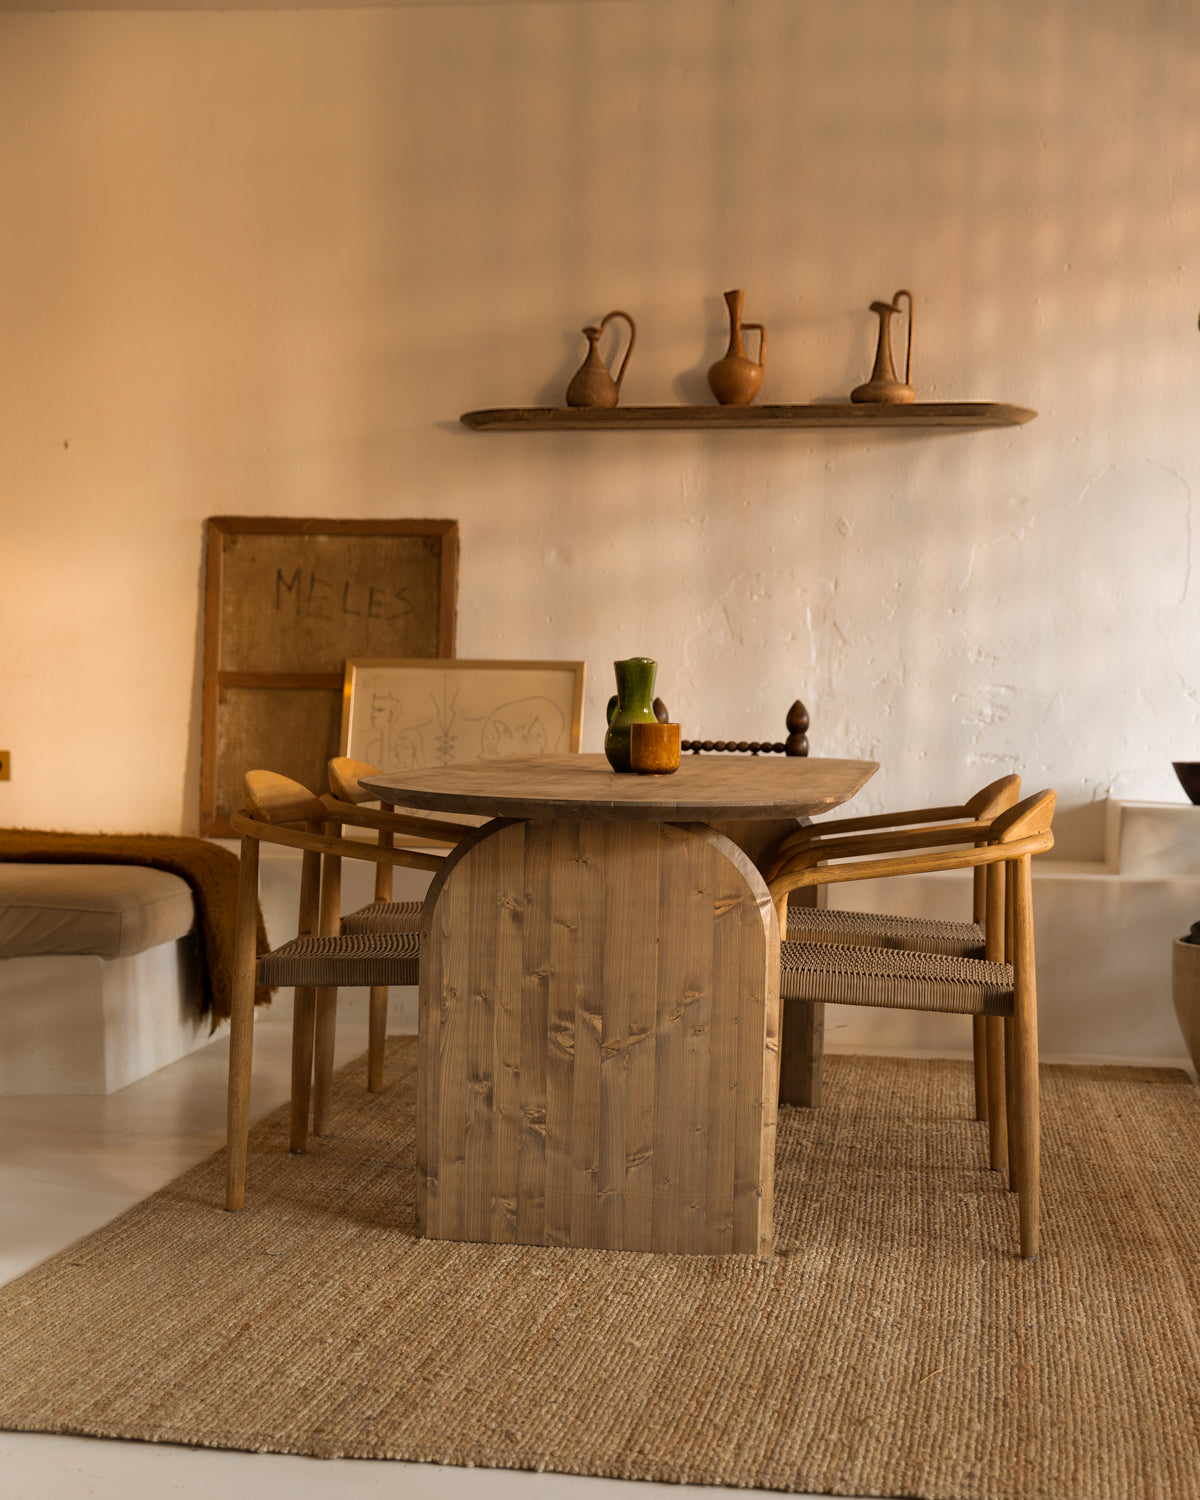 Mesa de comedor ovalada de madera maciza en tono roble oscuro 160cm - DECOWOOD